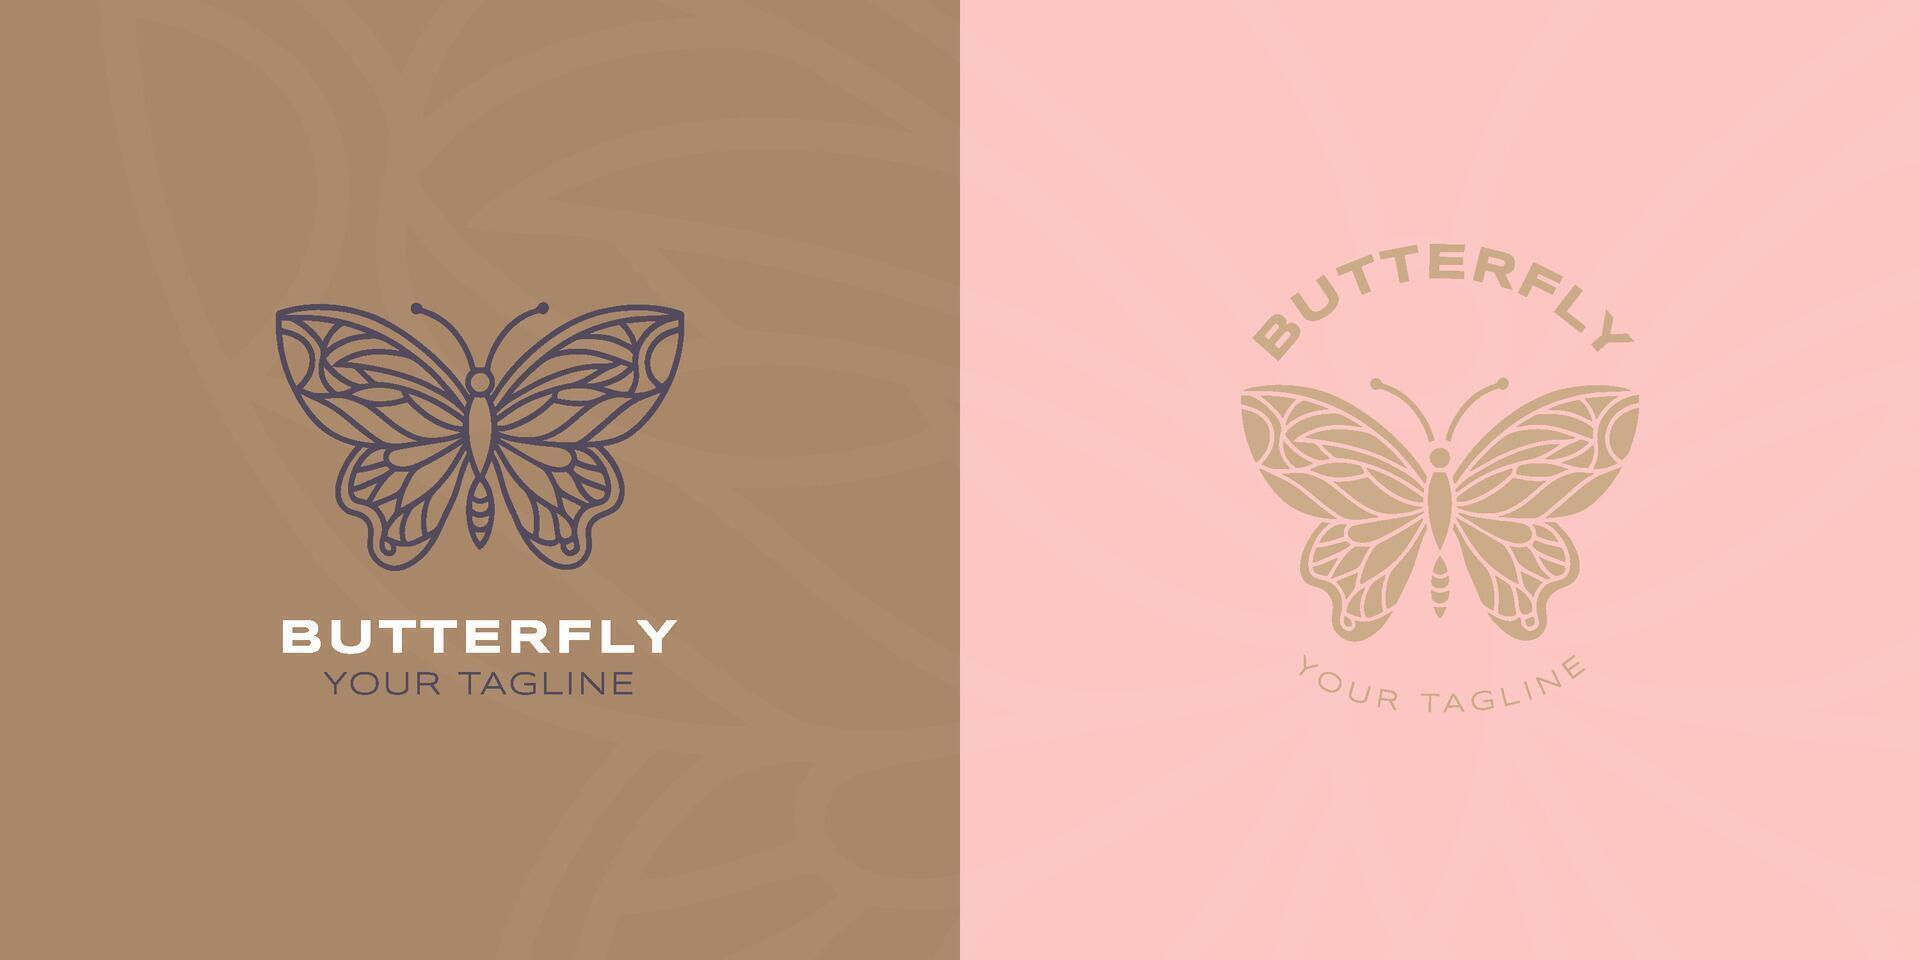 vlinder lijn en vlak logo. voor decoratie, spa, yoga, floreren, uitnodiging, enz vector